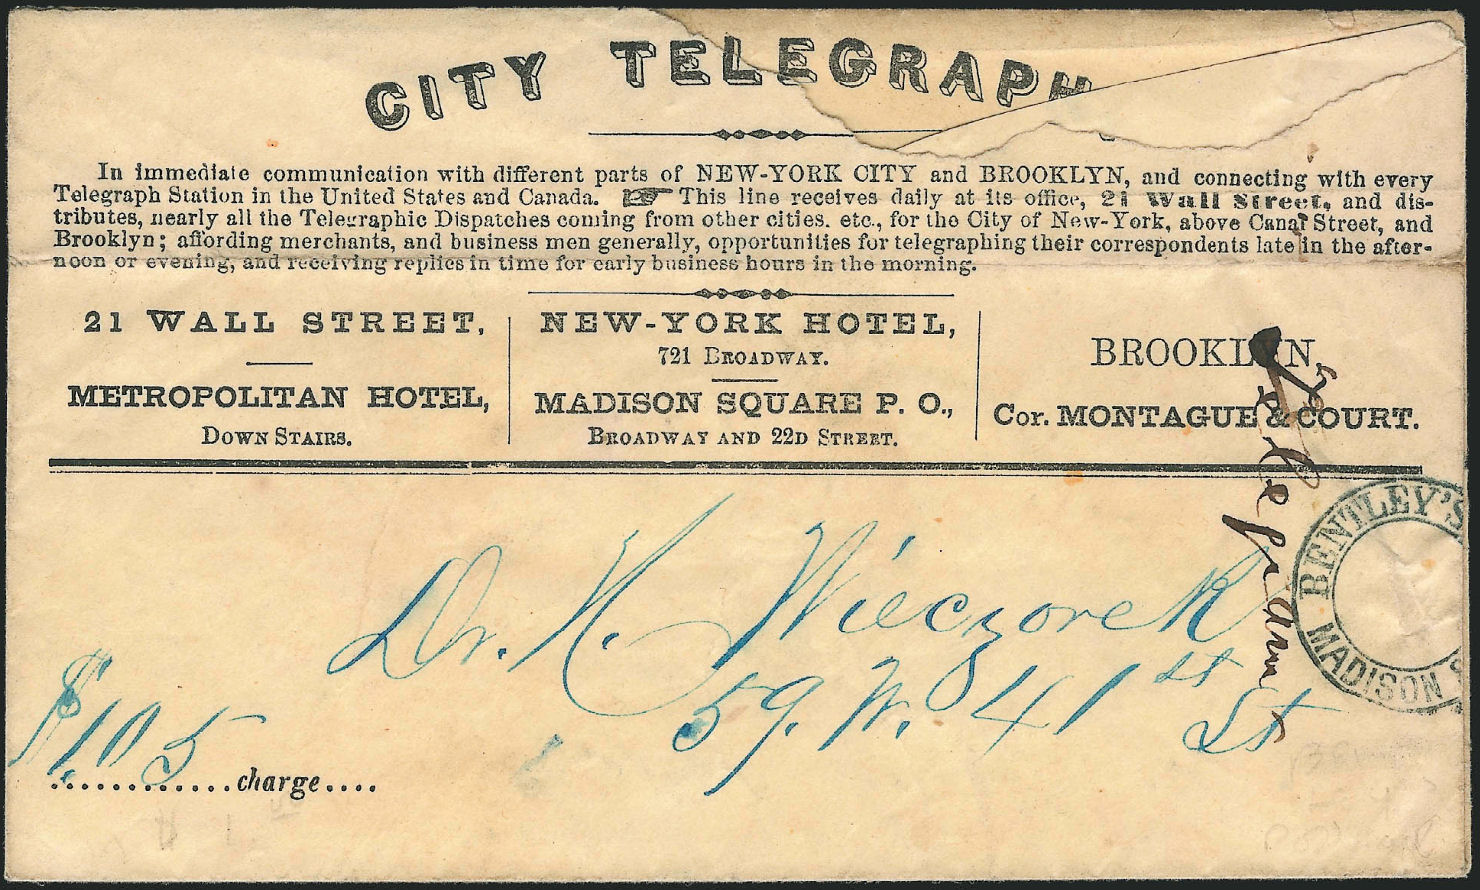 City Telegraph - Bentley's